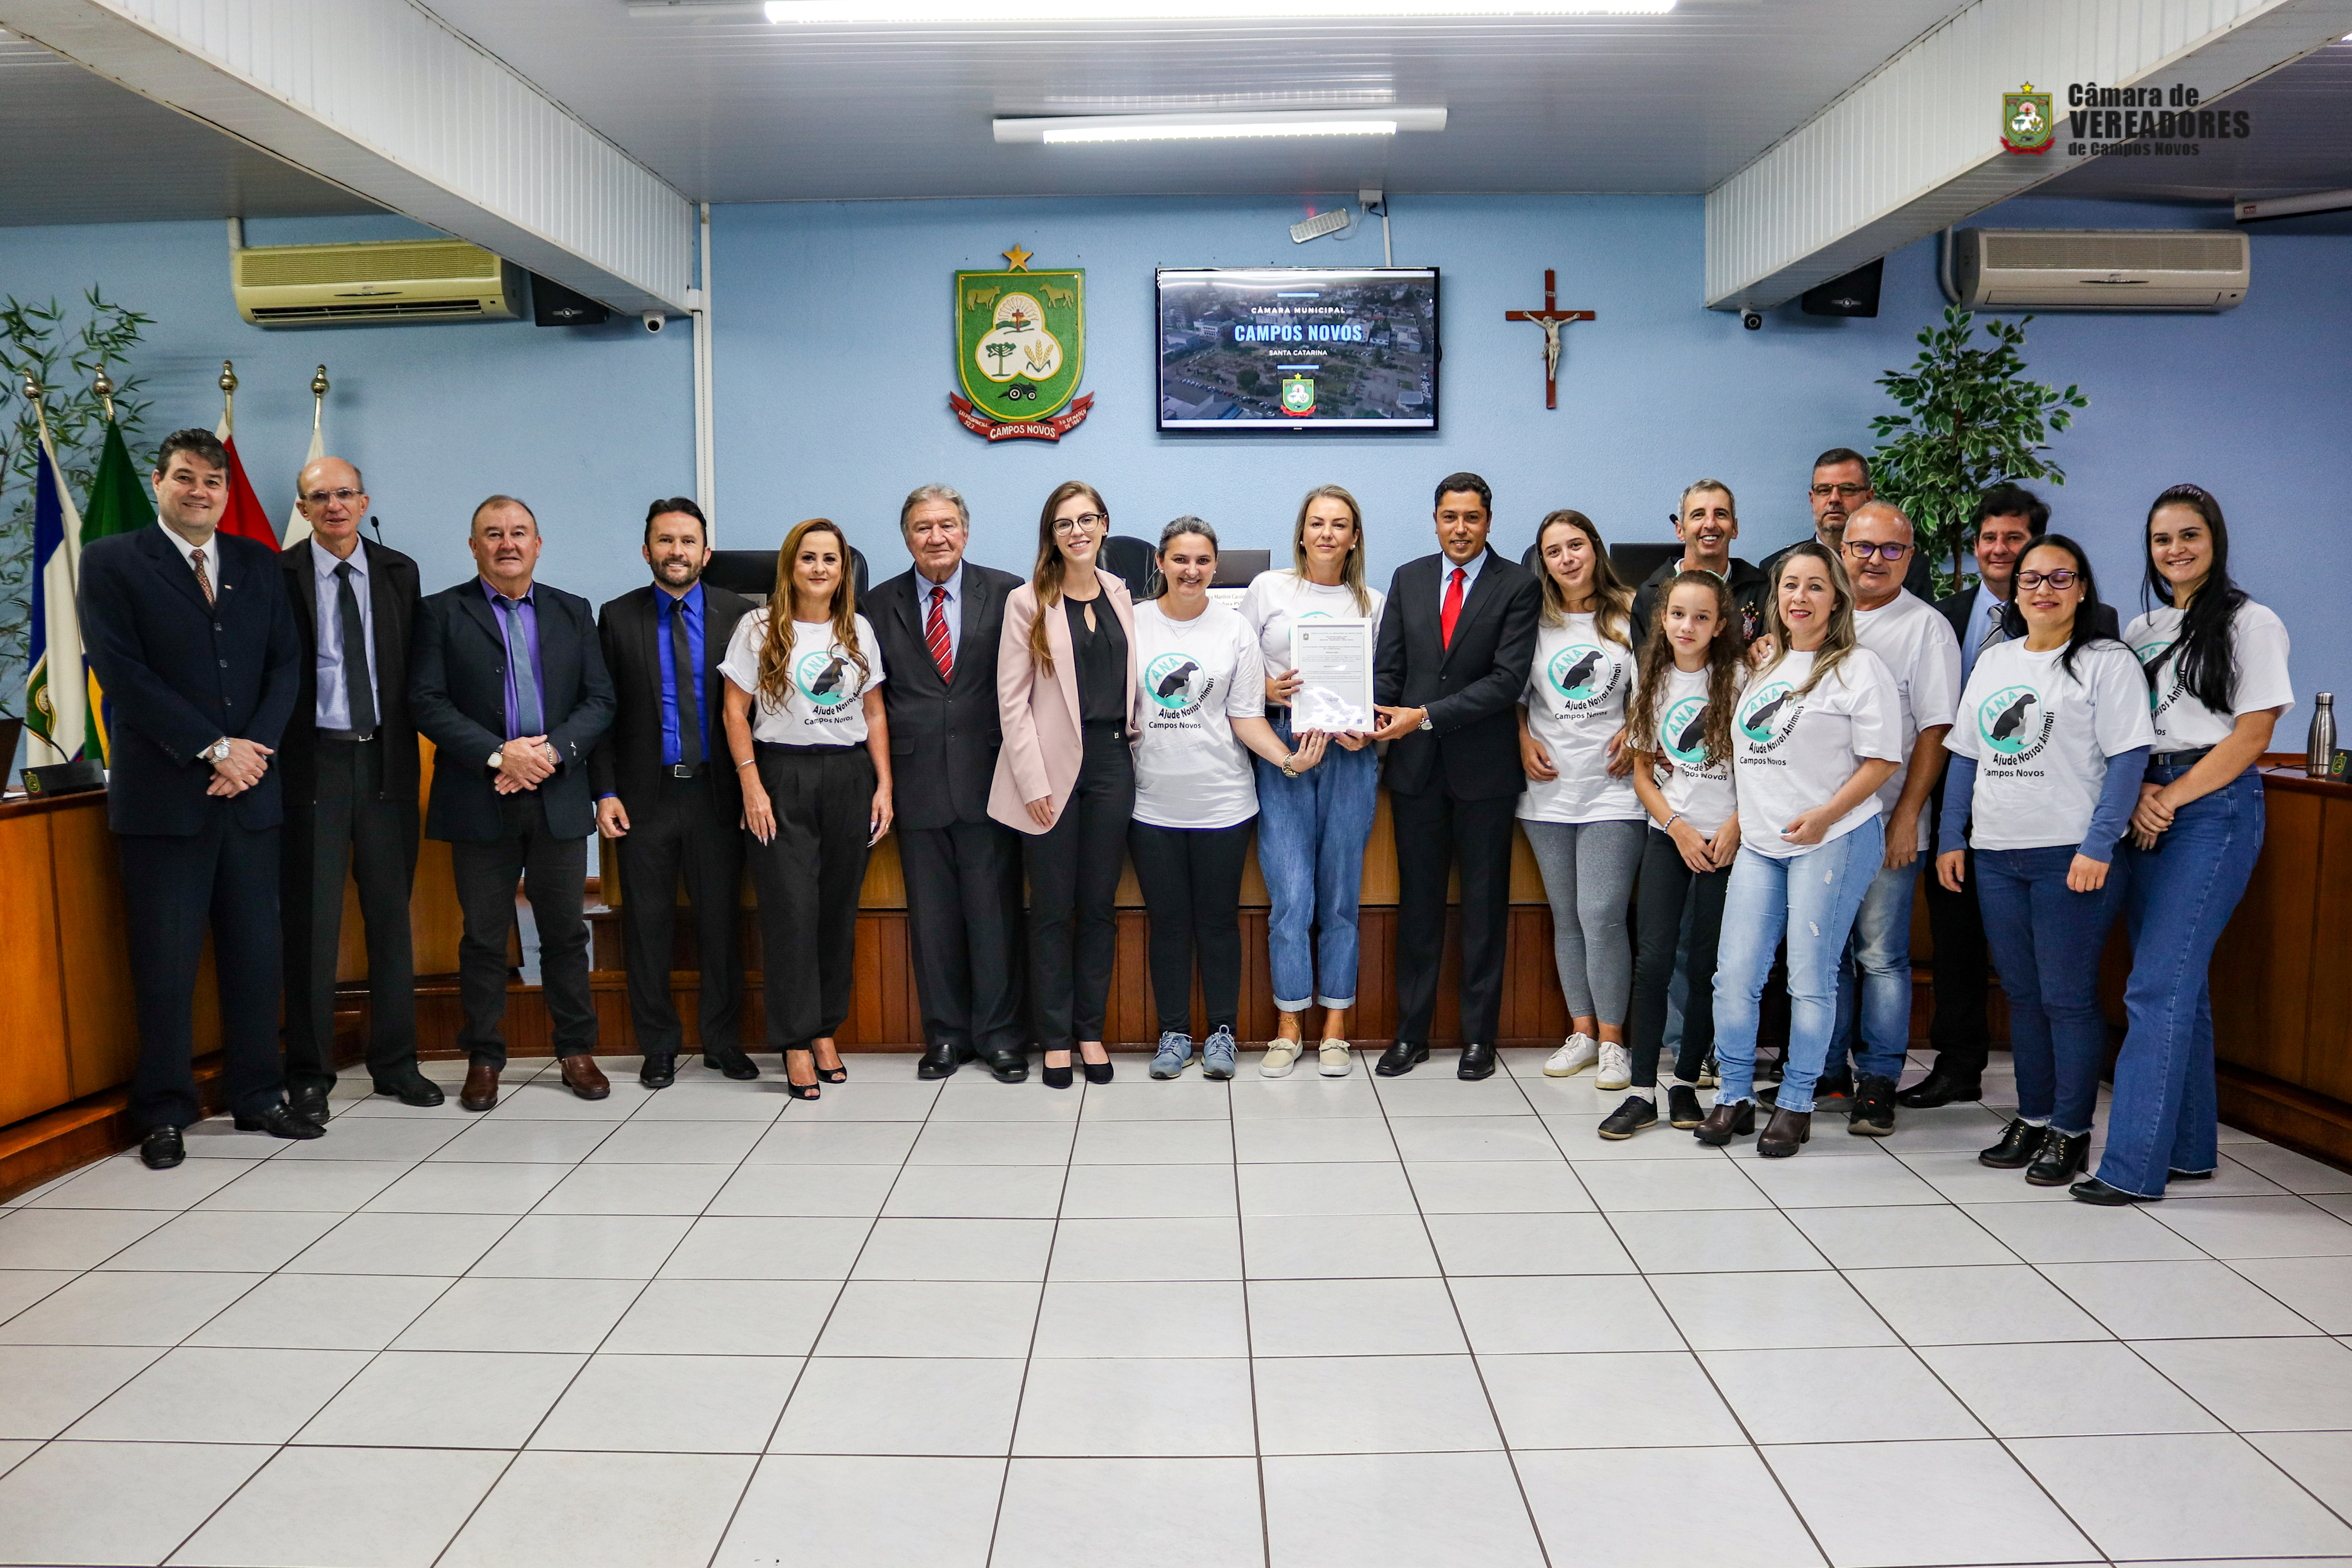 ANA Campos Novos recebe “MOÇÃO DE APLAUSOS” da Câmara de Vereadores